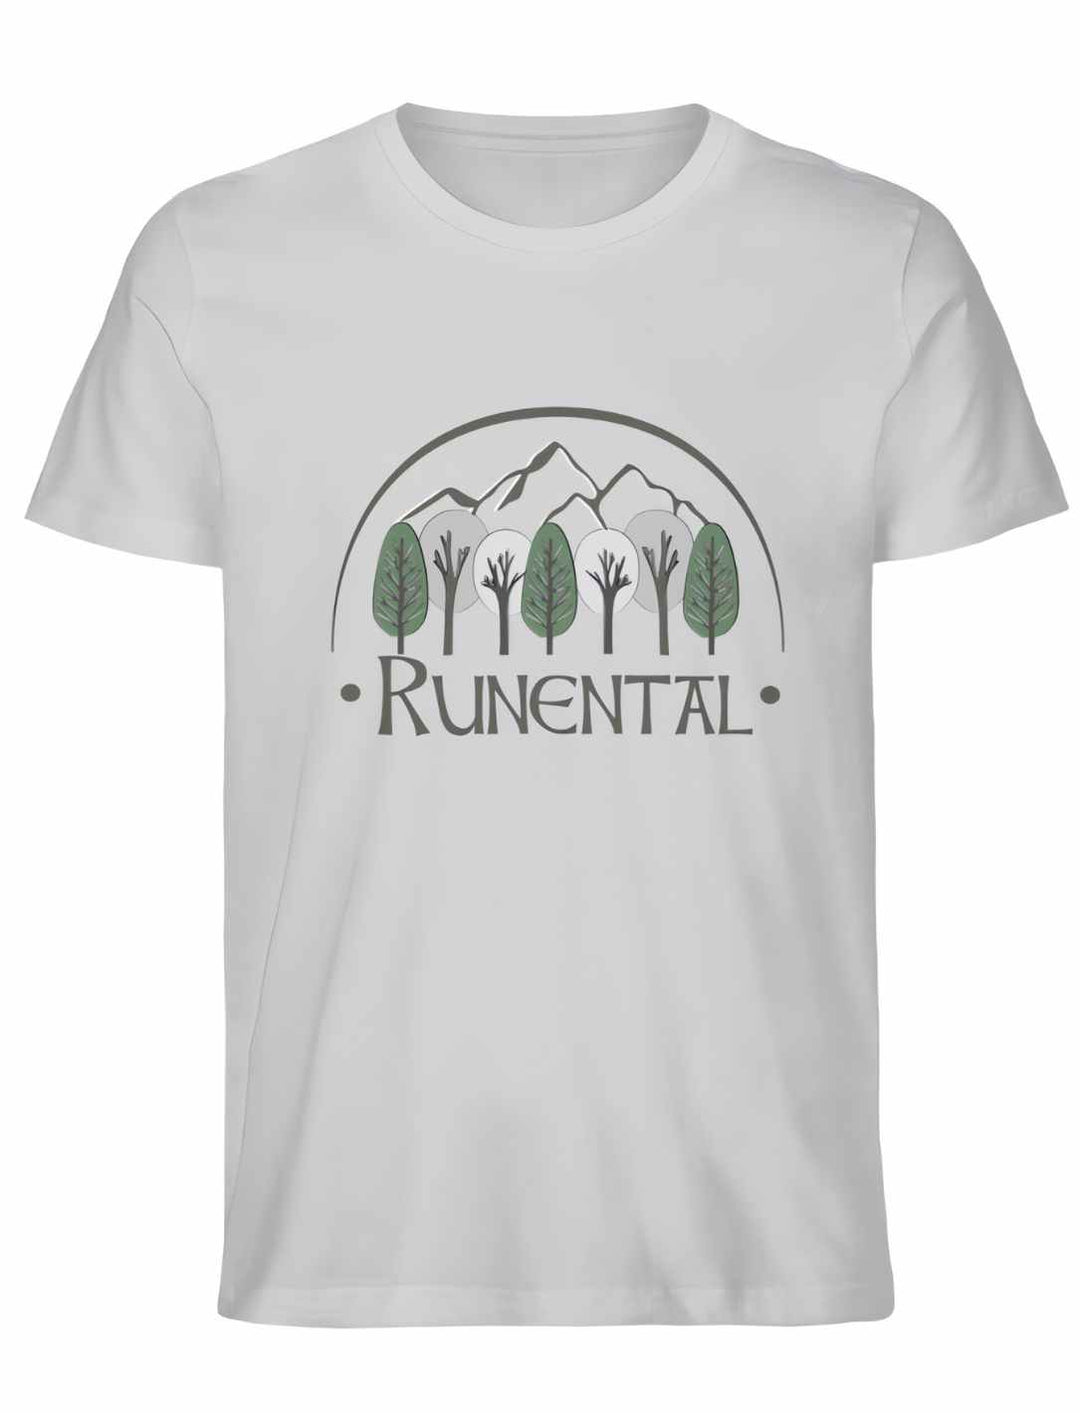 Grau meliertes Runental Fanwear Unisex Organic T-Shirt, flach präsentiert.